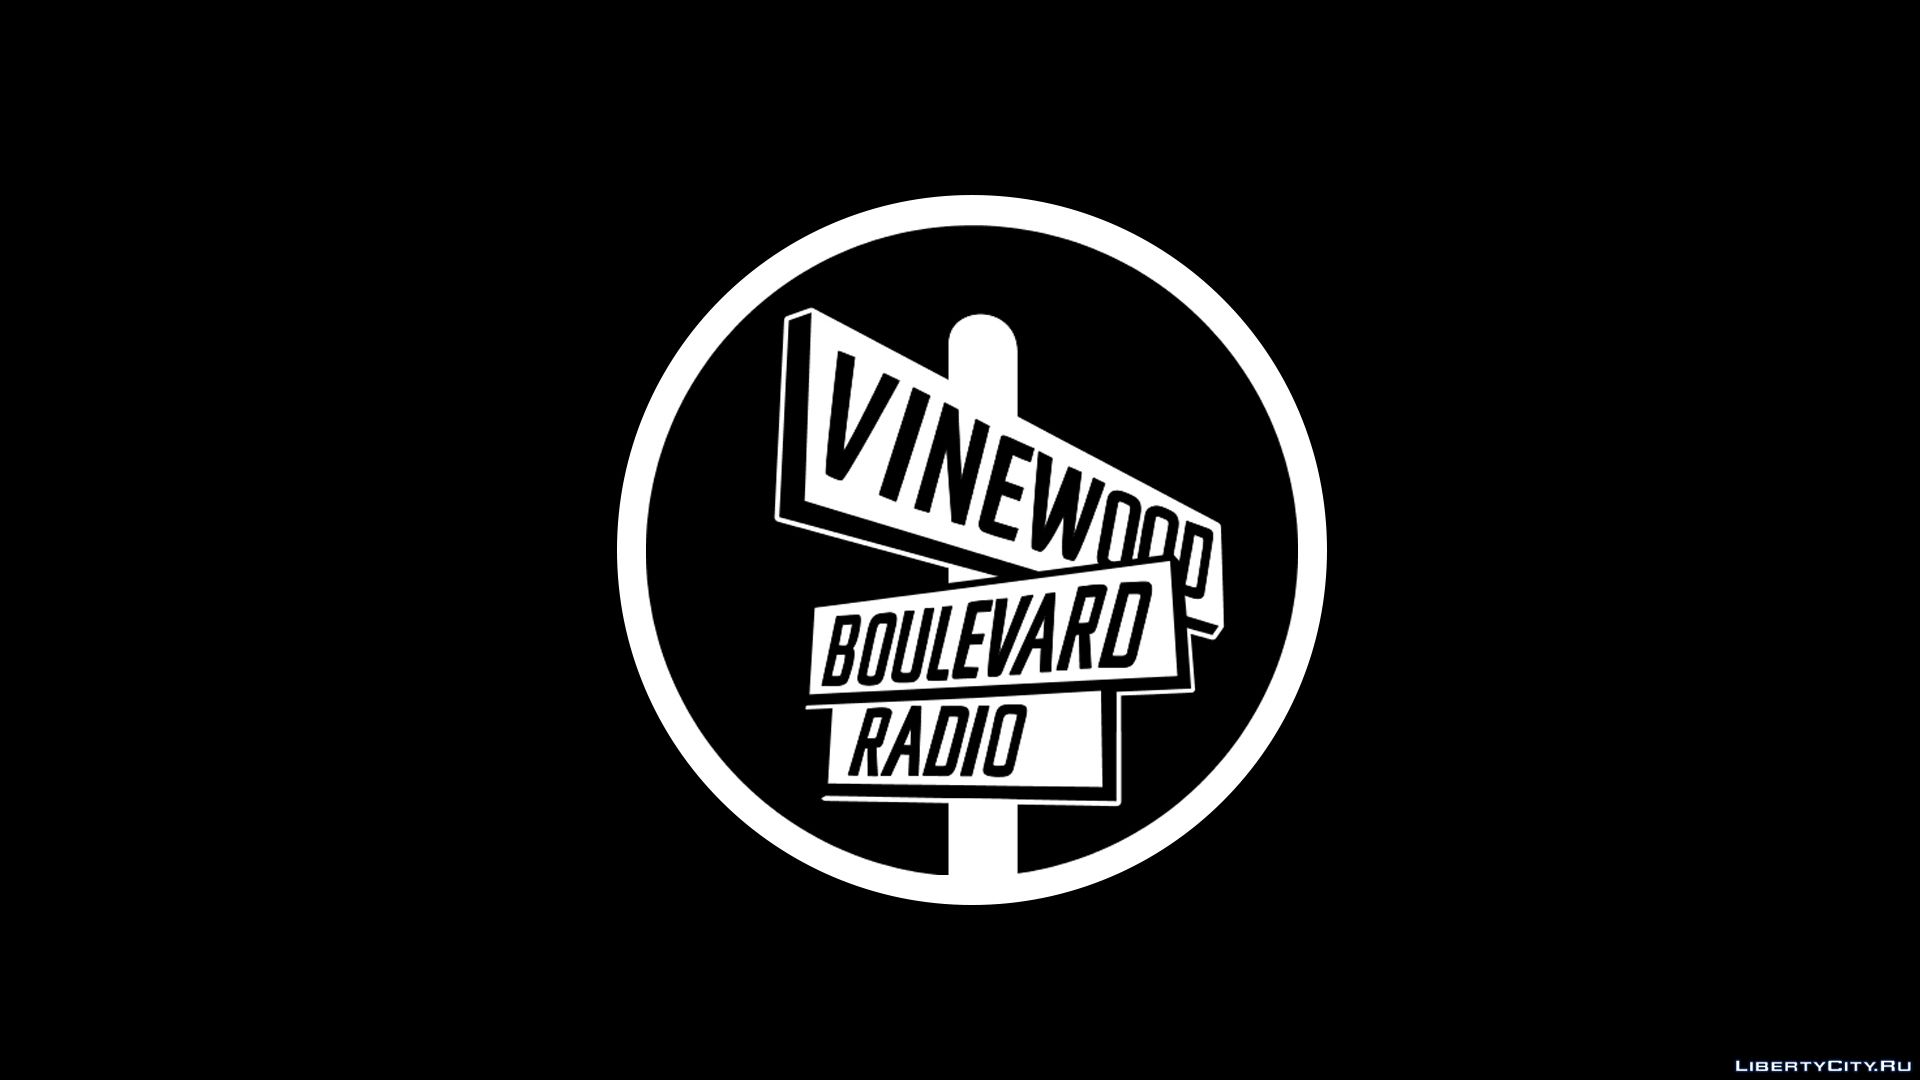 гта 5 vinewood boulevard radio фото 1